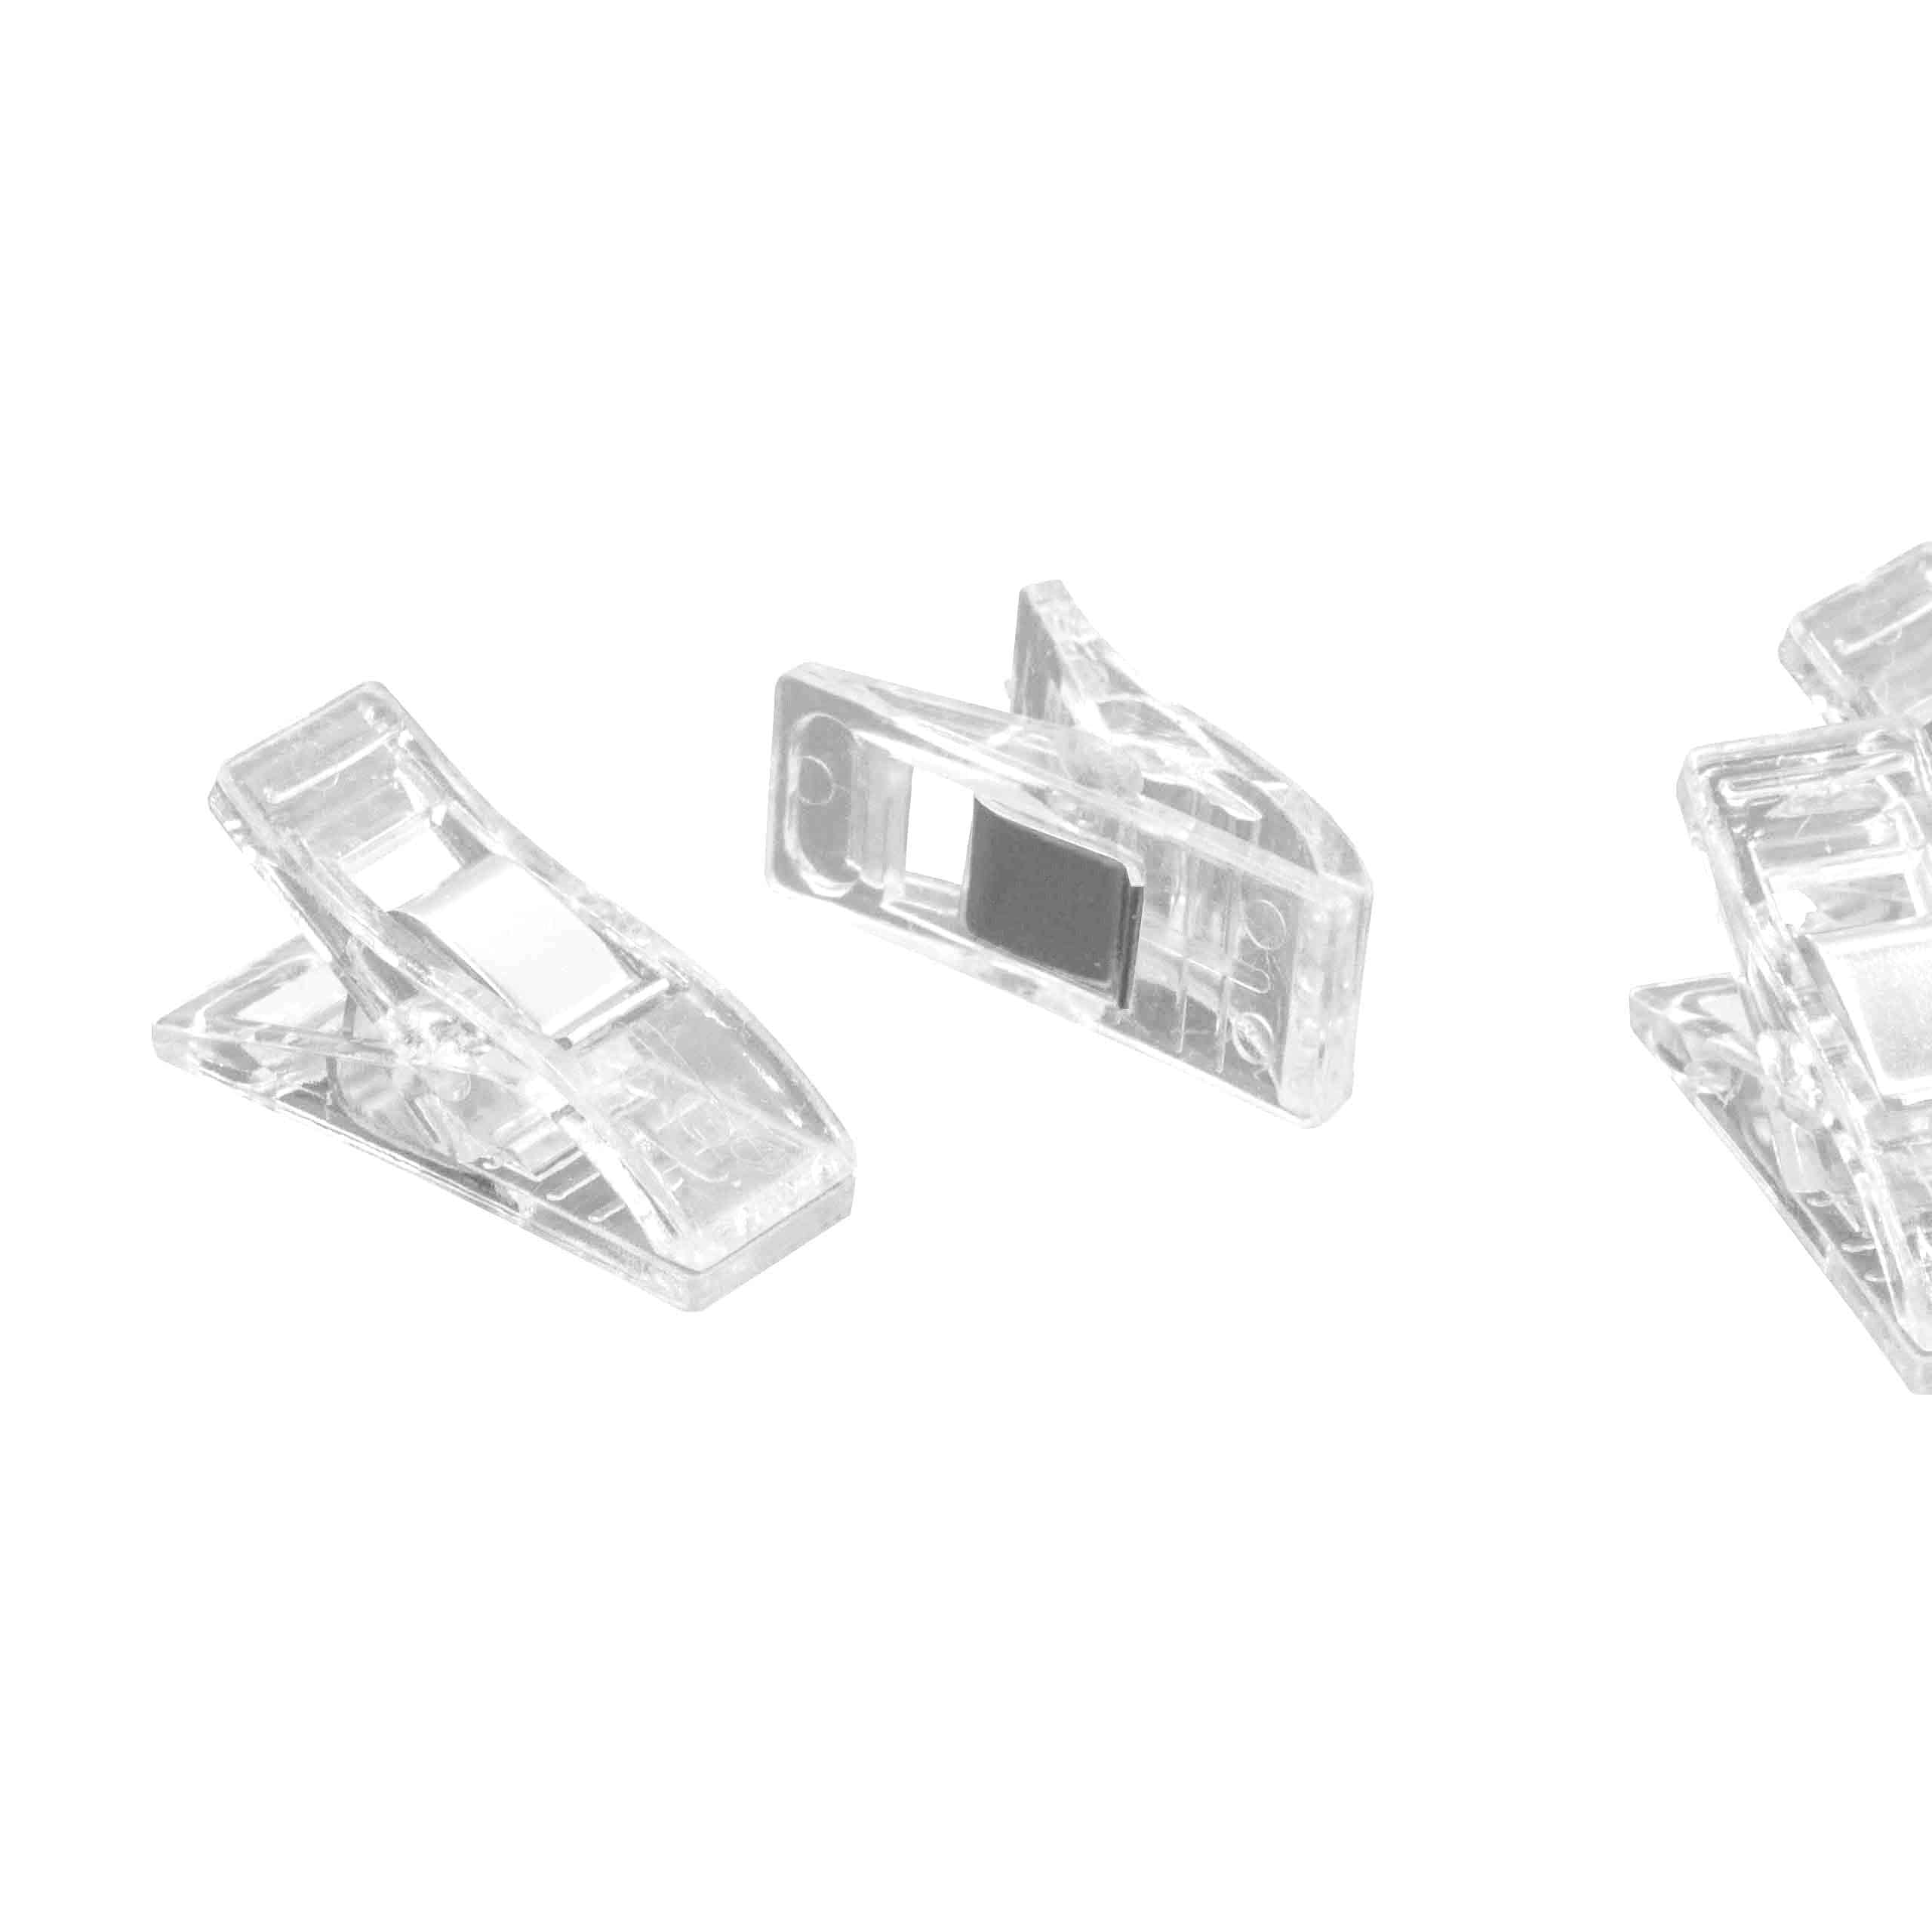 10x Wonderclips für Nähen und Basteln - Mit Abstandsmarkierungen, Transparent